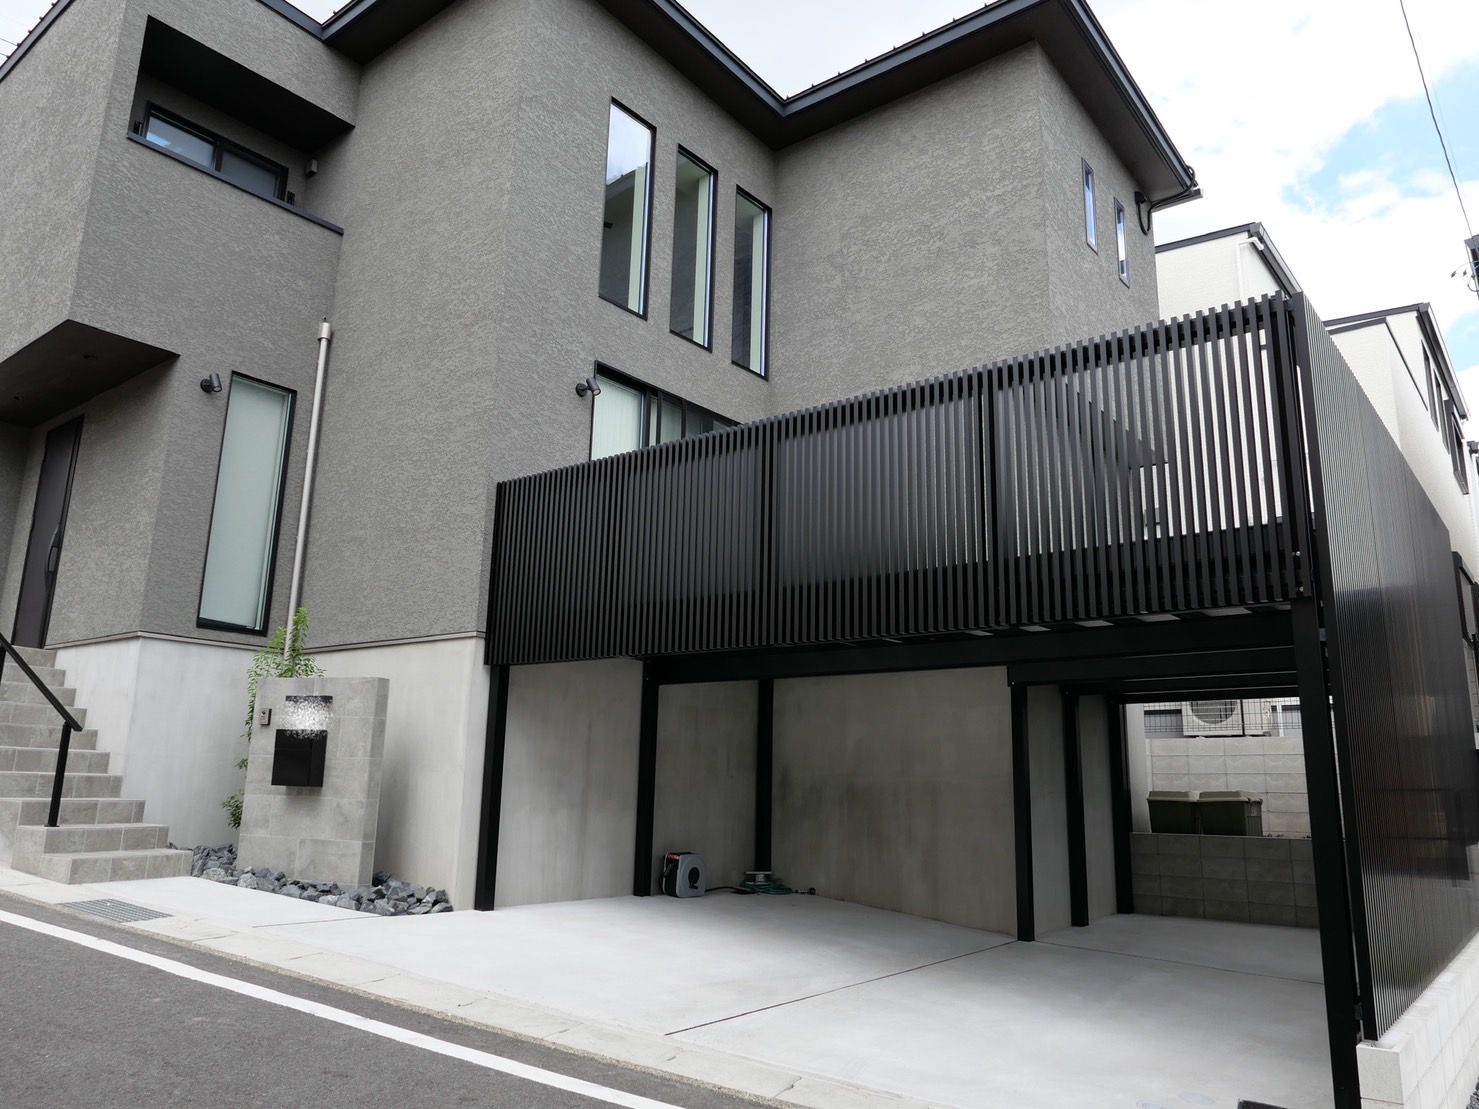 バルコニー付きの新築外構工事|愛知県日進市の新築外構工事、施工事例。サンアイ岡本のオーダーメイドのベランダを設置。LIXILのプログコートフェンスを組み合わせカスタマイズ。 門塀を作成し、階段を門塀と同様のタイル仕上げ。階段の側面は少しデザイン性を取り入れたタイルとモルタルの境目を作り上げました。　 ＃パートナーホーム　＃おしゃれな外構　＃エクステリア　＃ポスト　＃名古屋市名東区|パートナーホーム